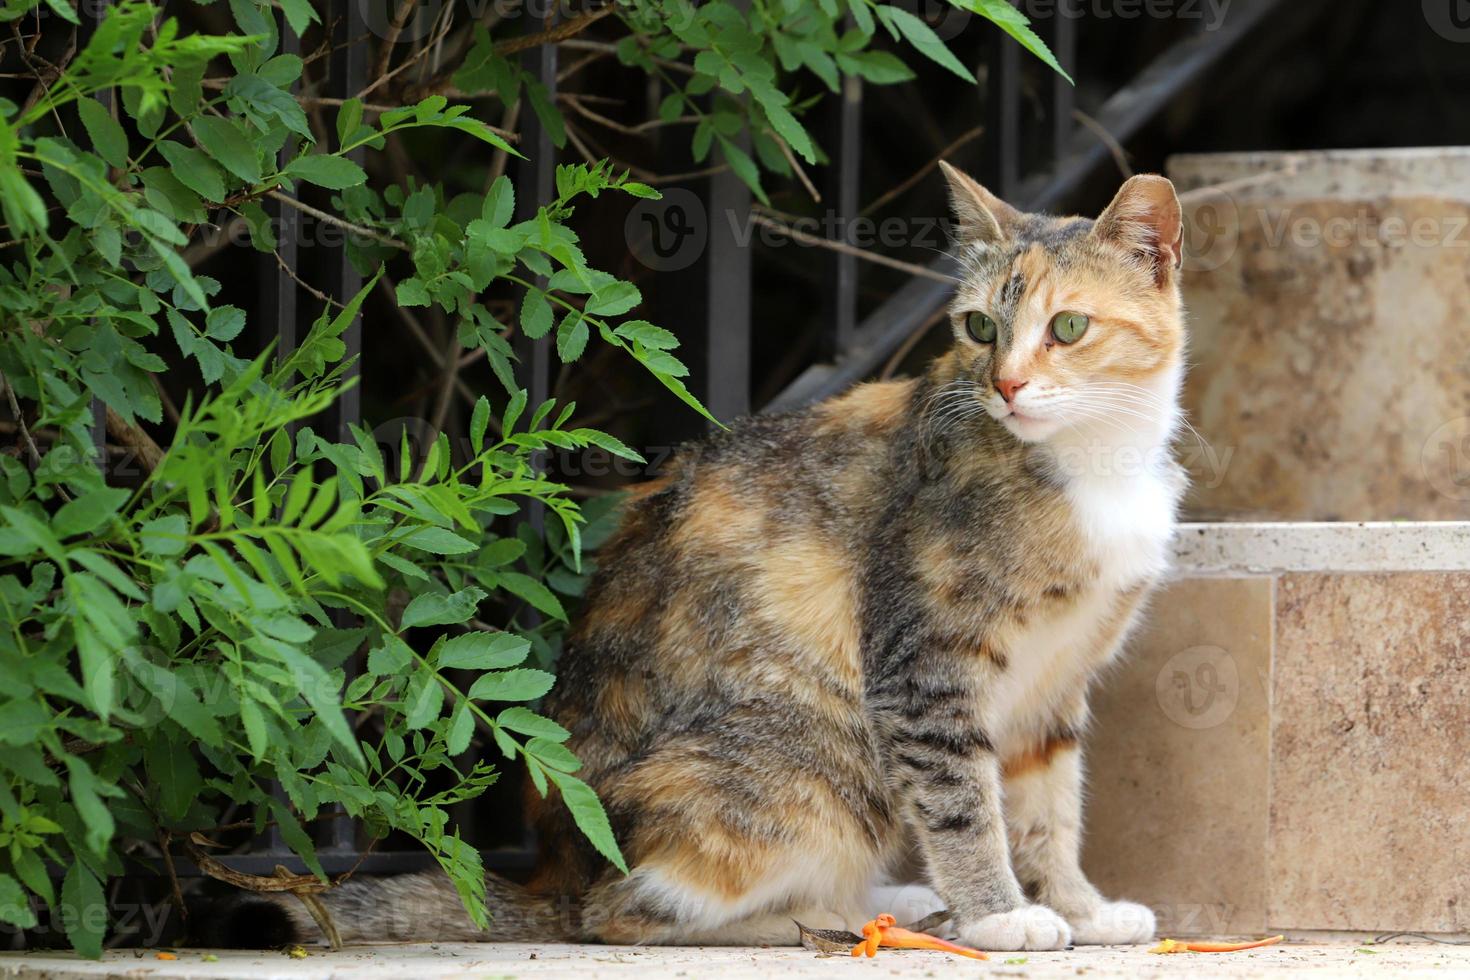 il gatto domestico è un mammifero della famiglia felina dell'ordine dei carnivori. foto